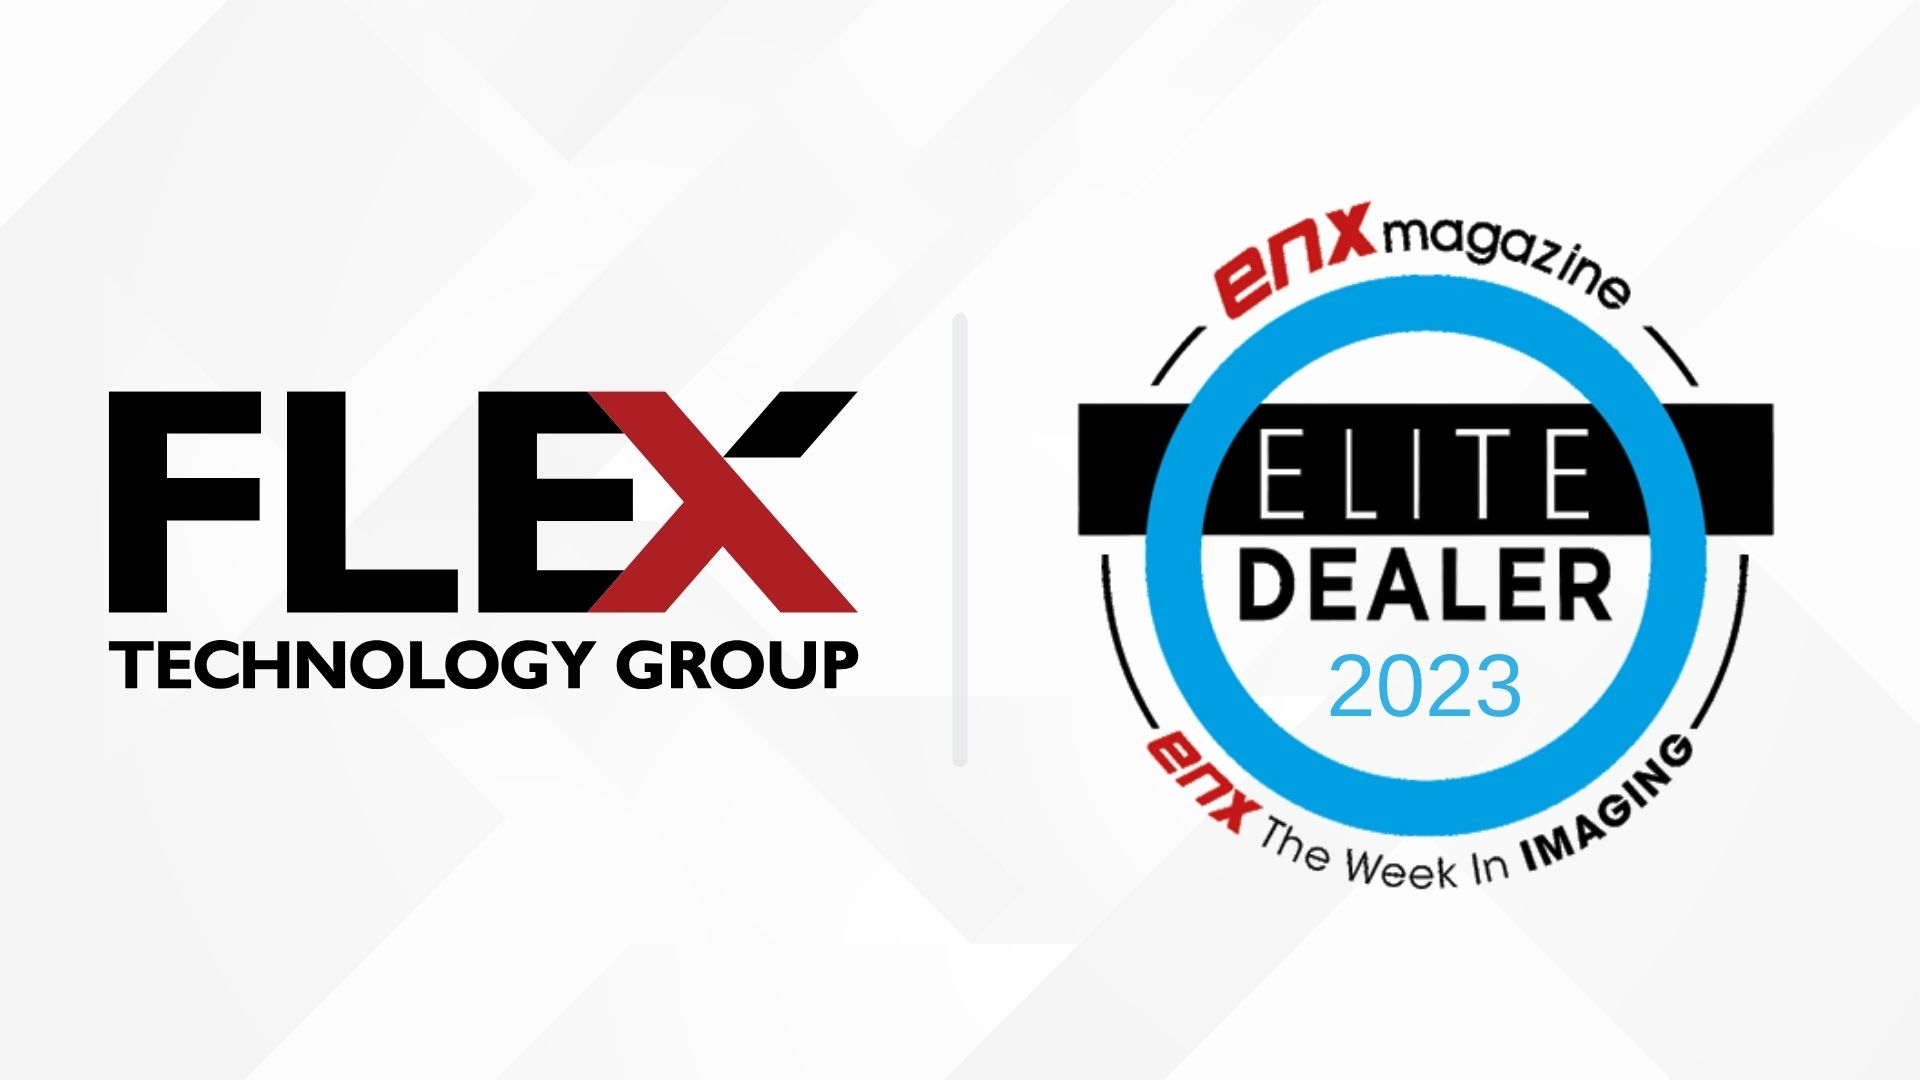 Flex Technology Group Named a 2023 Elite Dealer